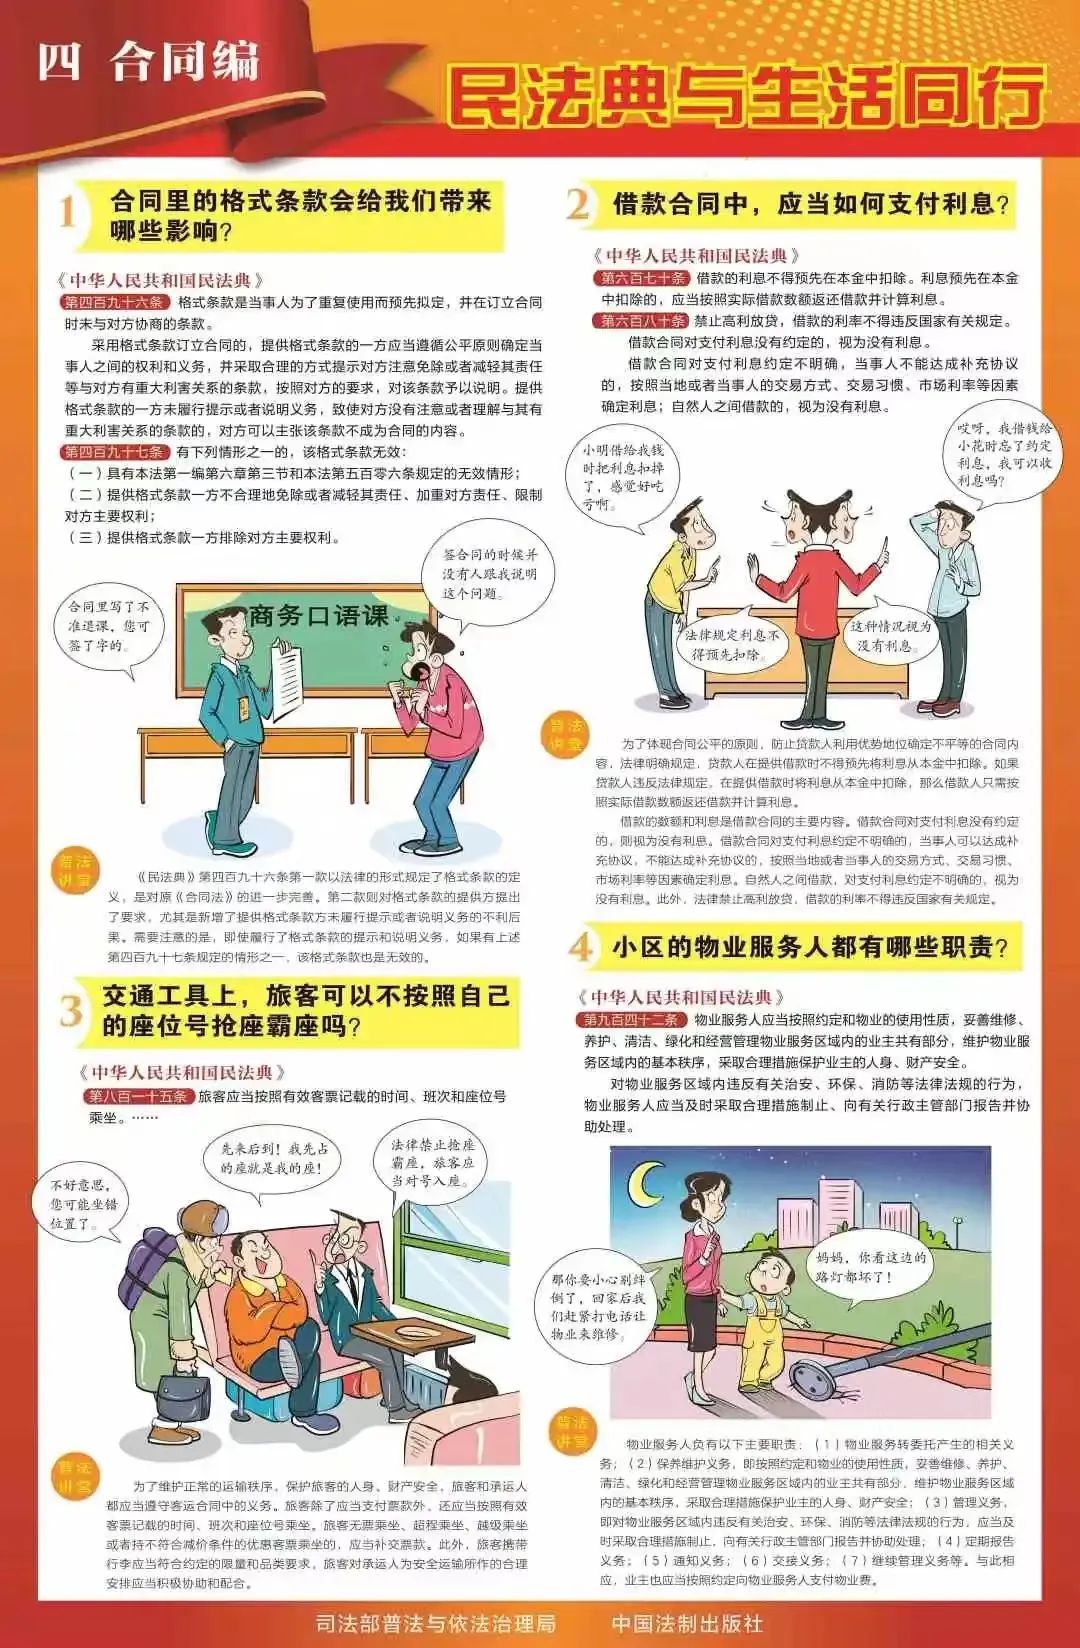 民法典学习宣传丨九张挂图带您速览民法典(图5)